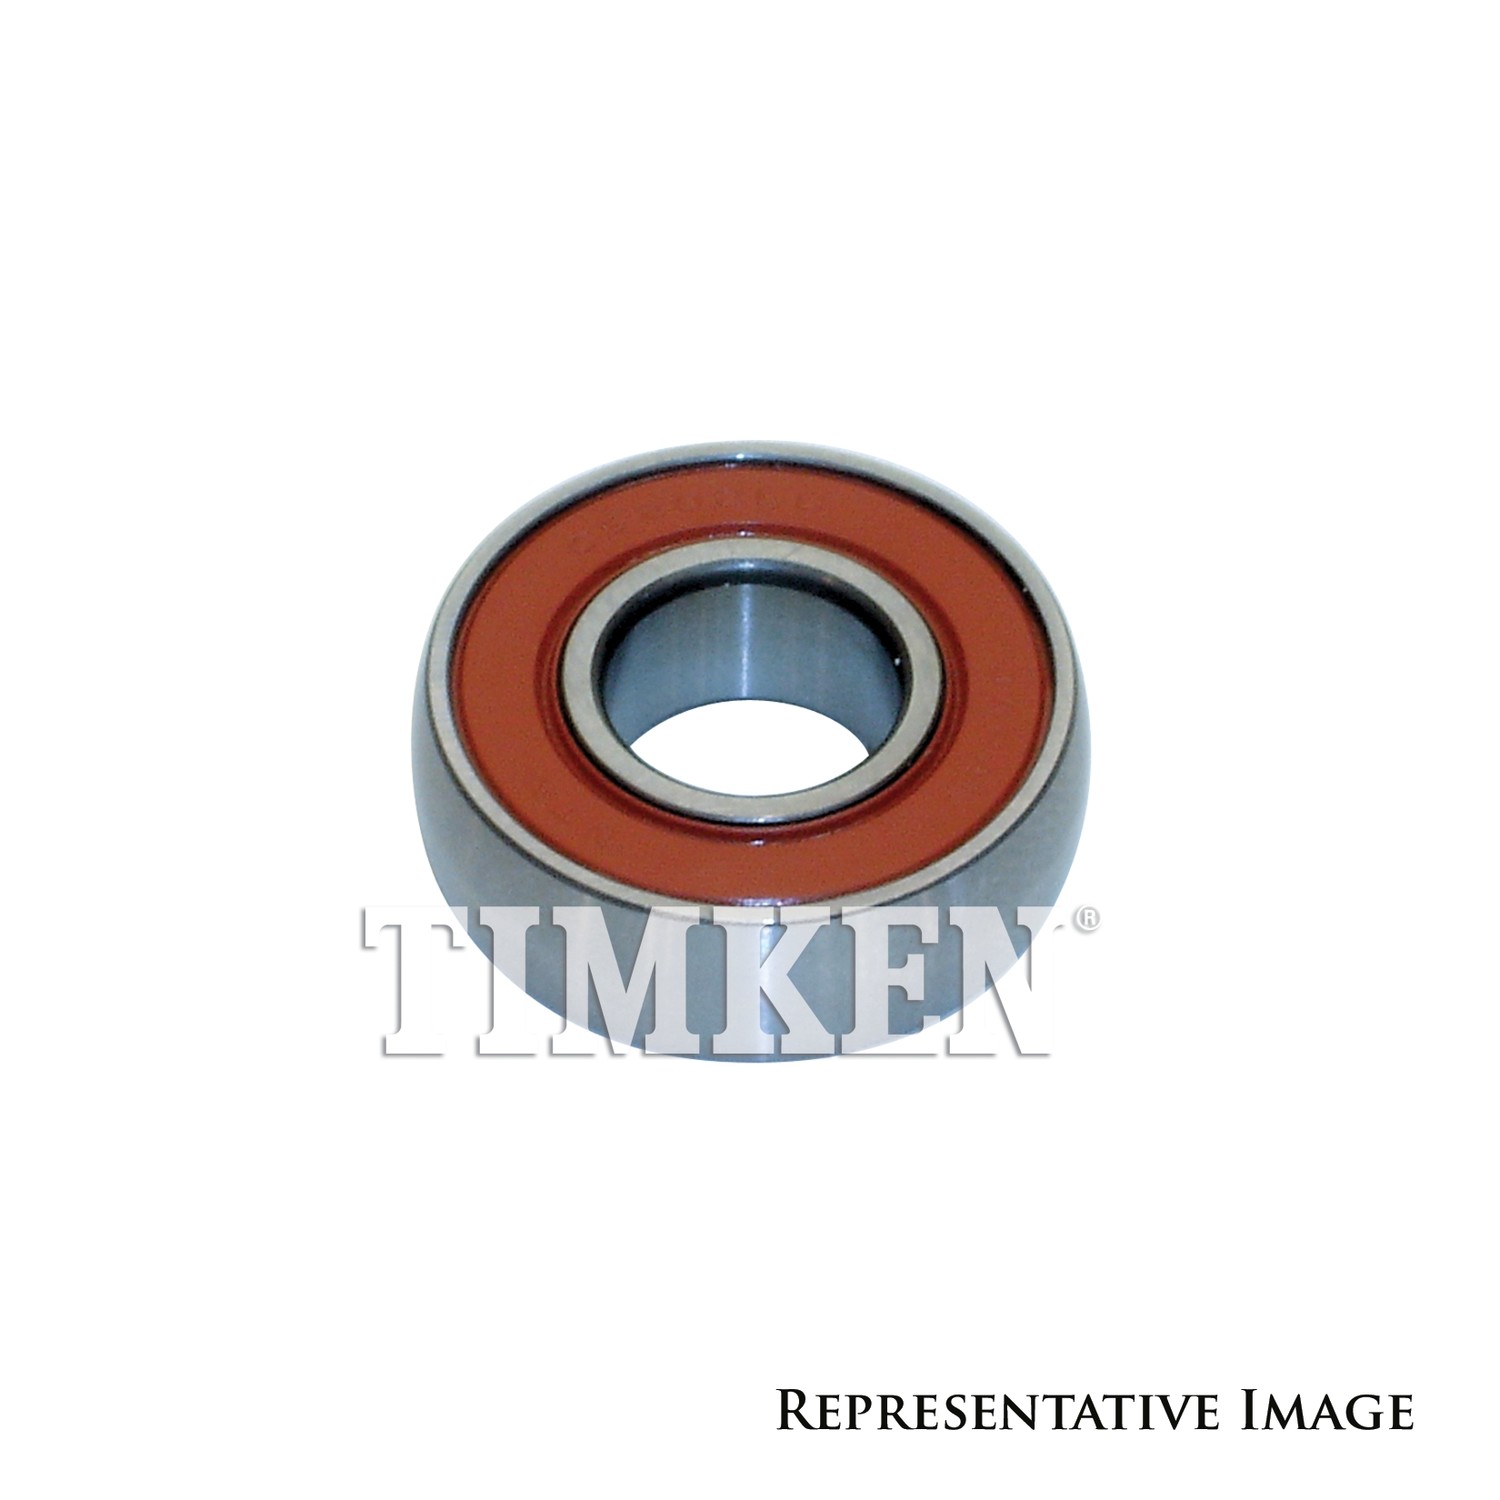 TIMKEN - A/C Compressor Clutch Bearing - TIM 205BB